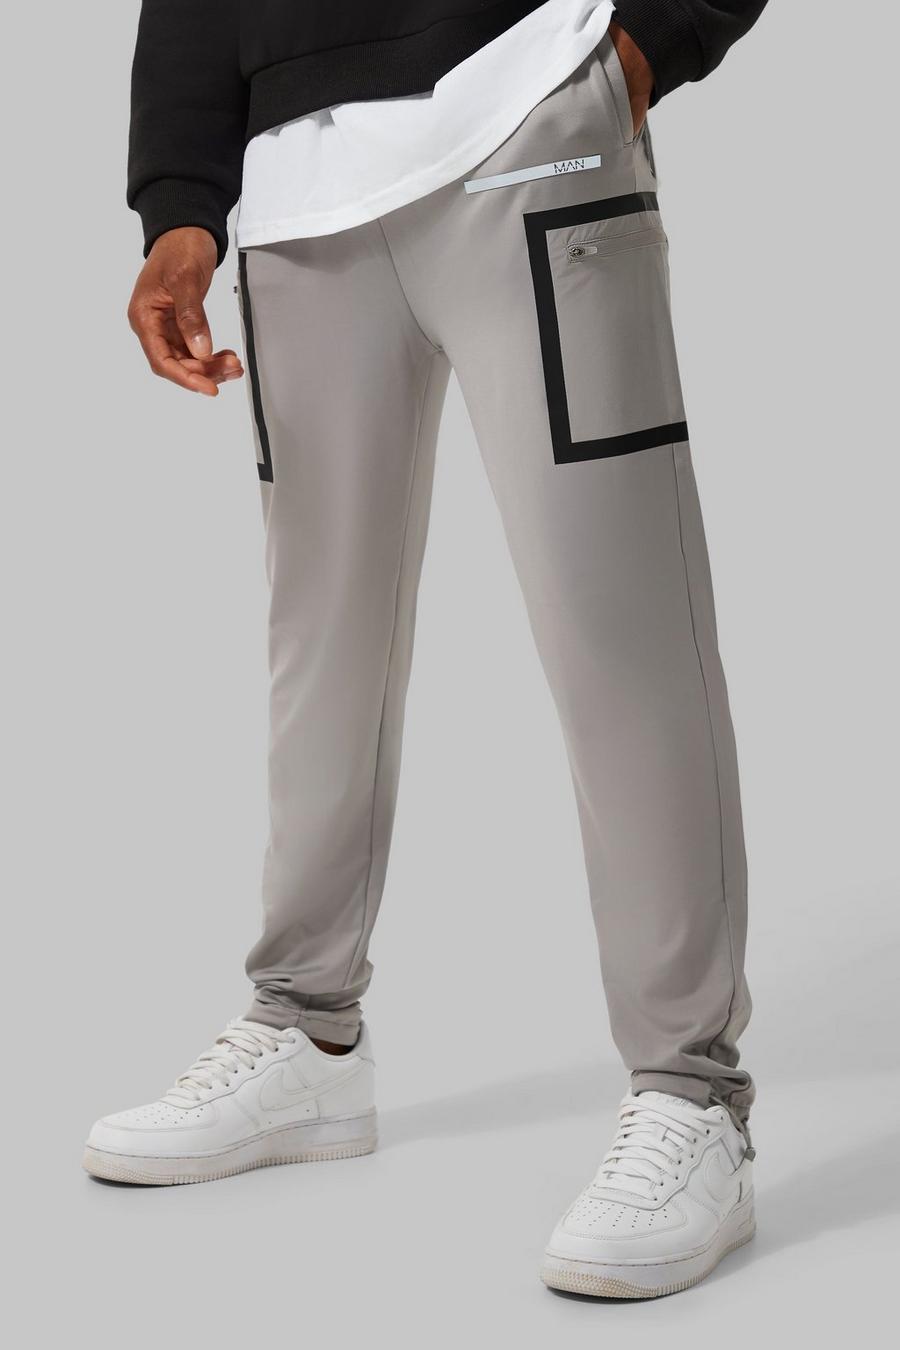 Pantaloni tuta Cargo Man Active per alta performance, Grey grigio image number 1